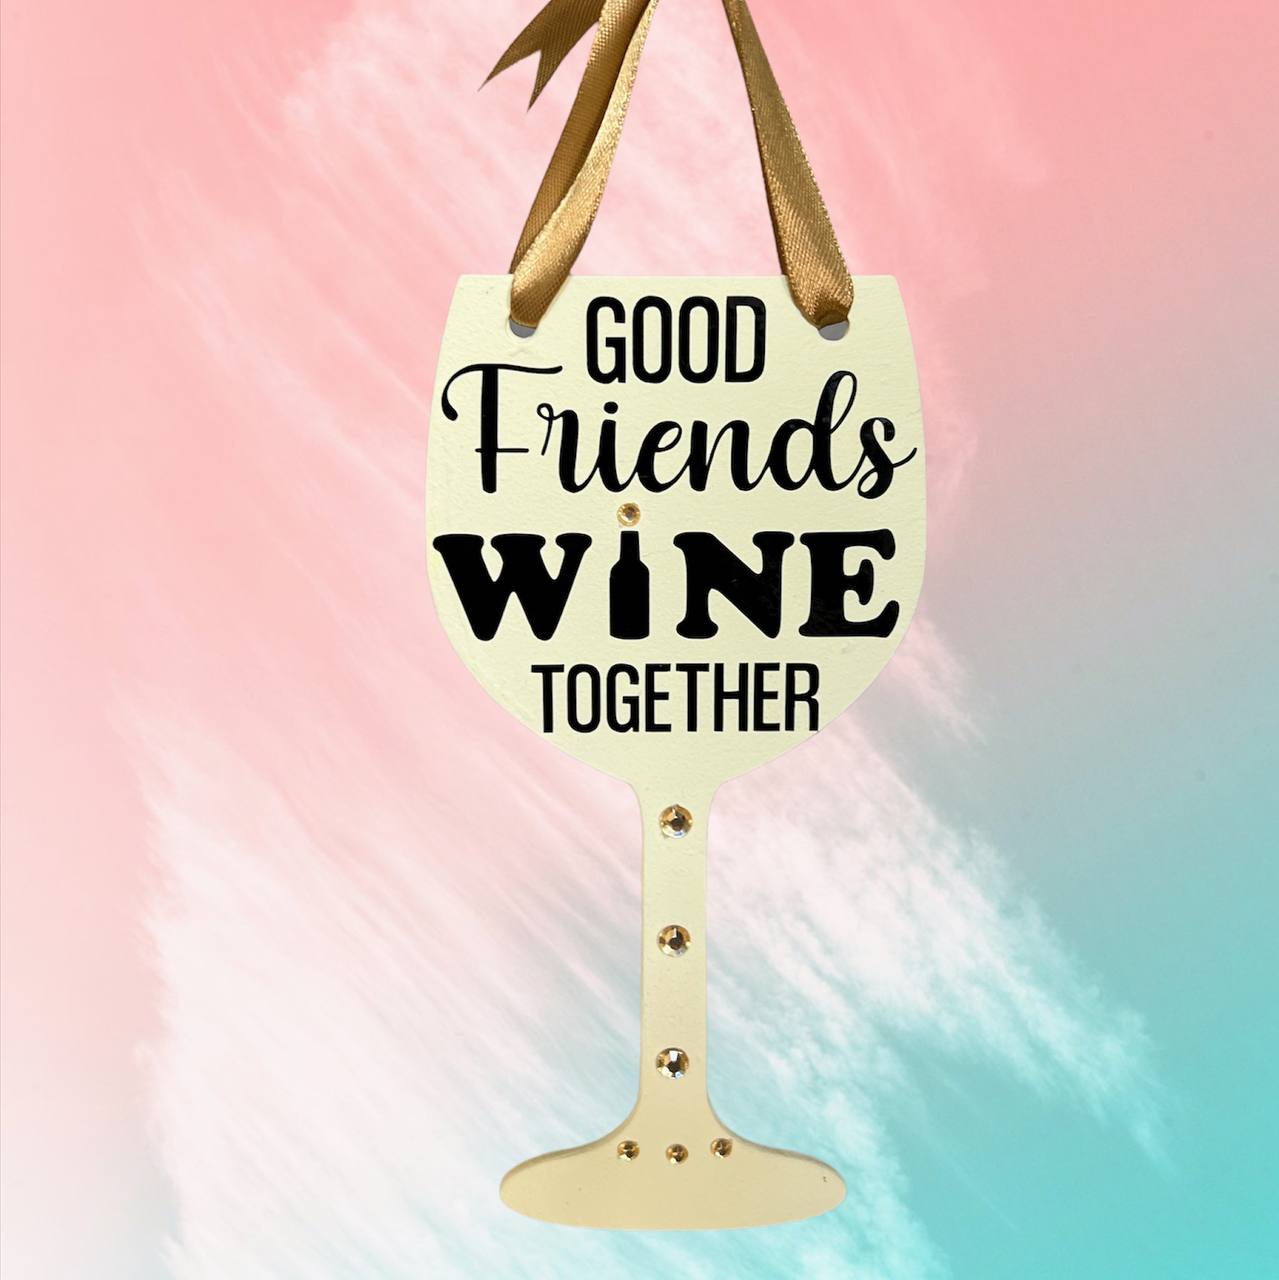 Wine: Wine Together